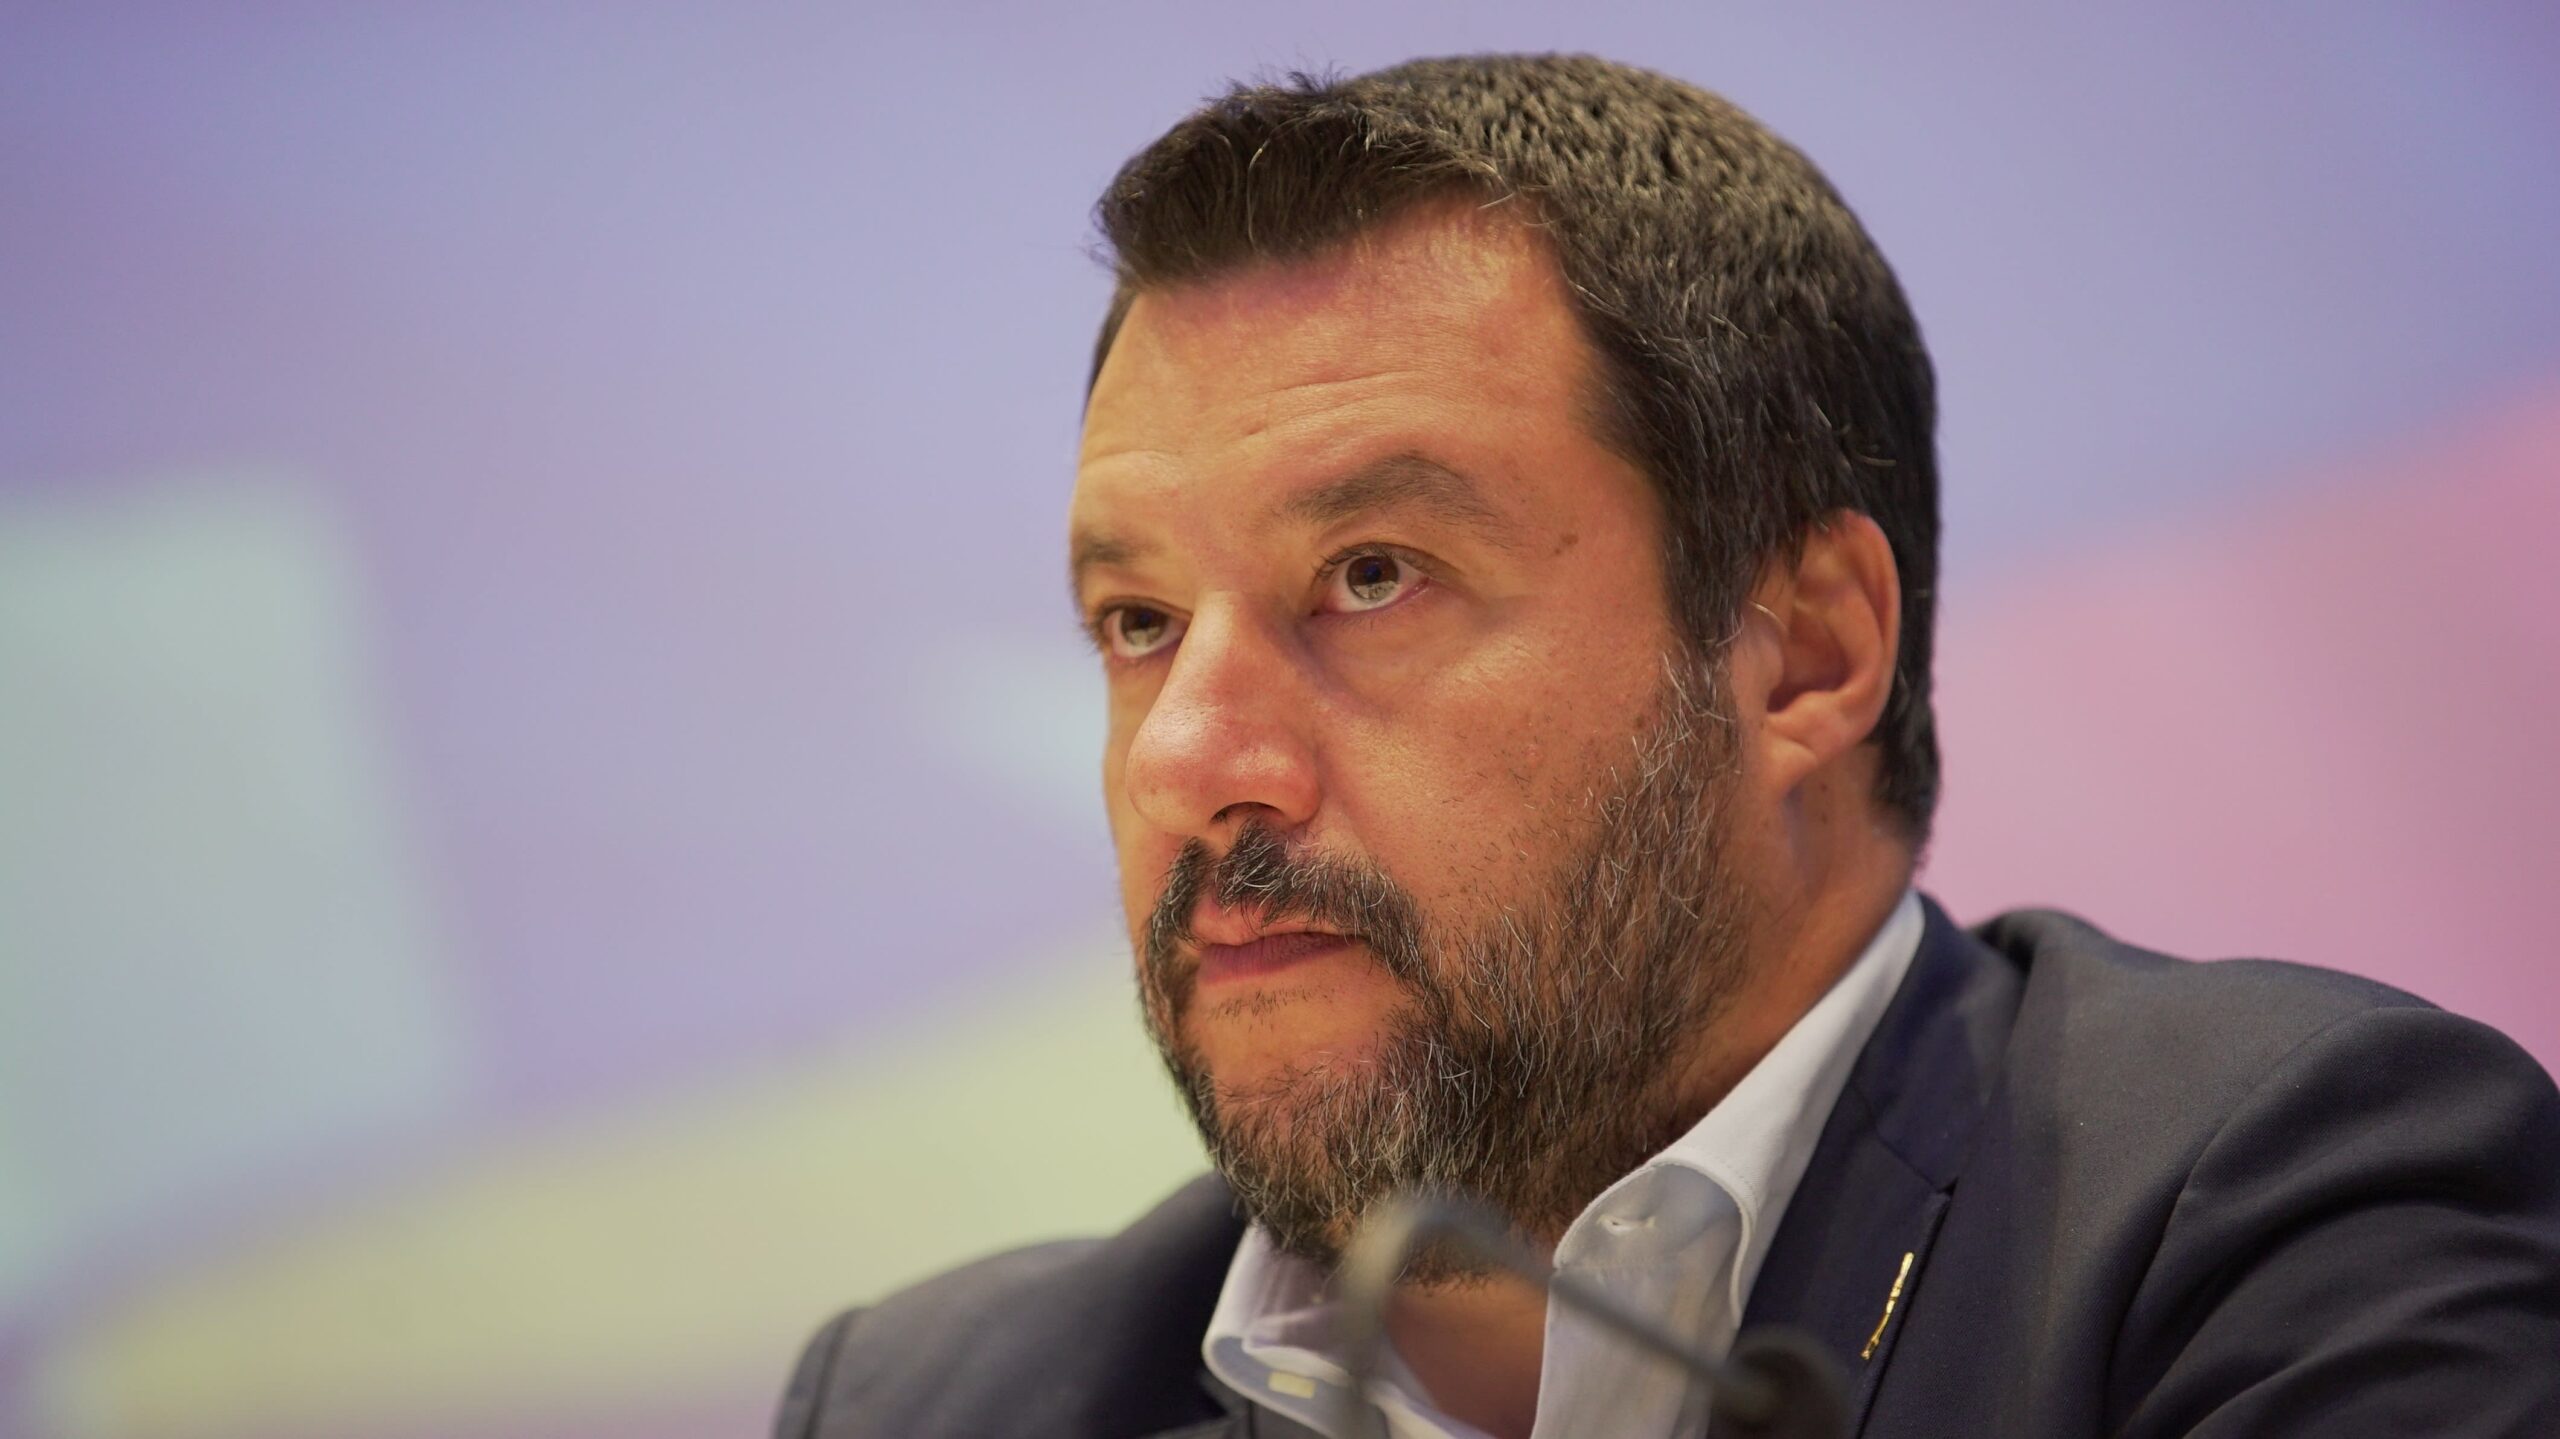 “Rezultati i zgjedhjeve në Rusi duhet të pranohet”, Matteo Salvini: Kur njerëzit votojnë, ata kanë gjithmonë të drejtë